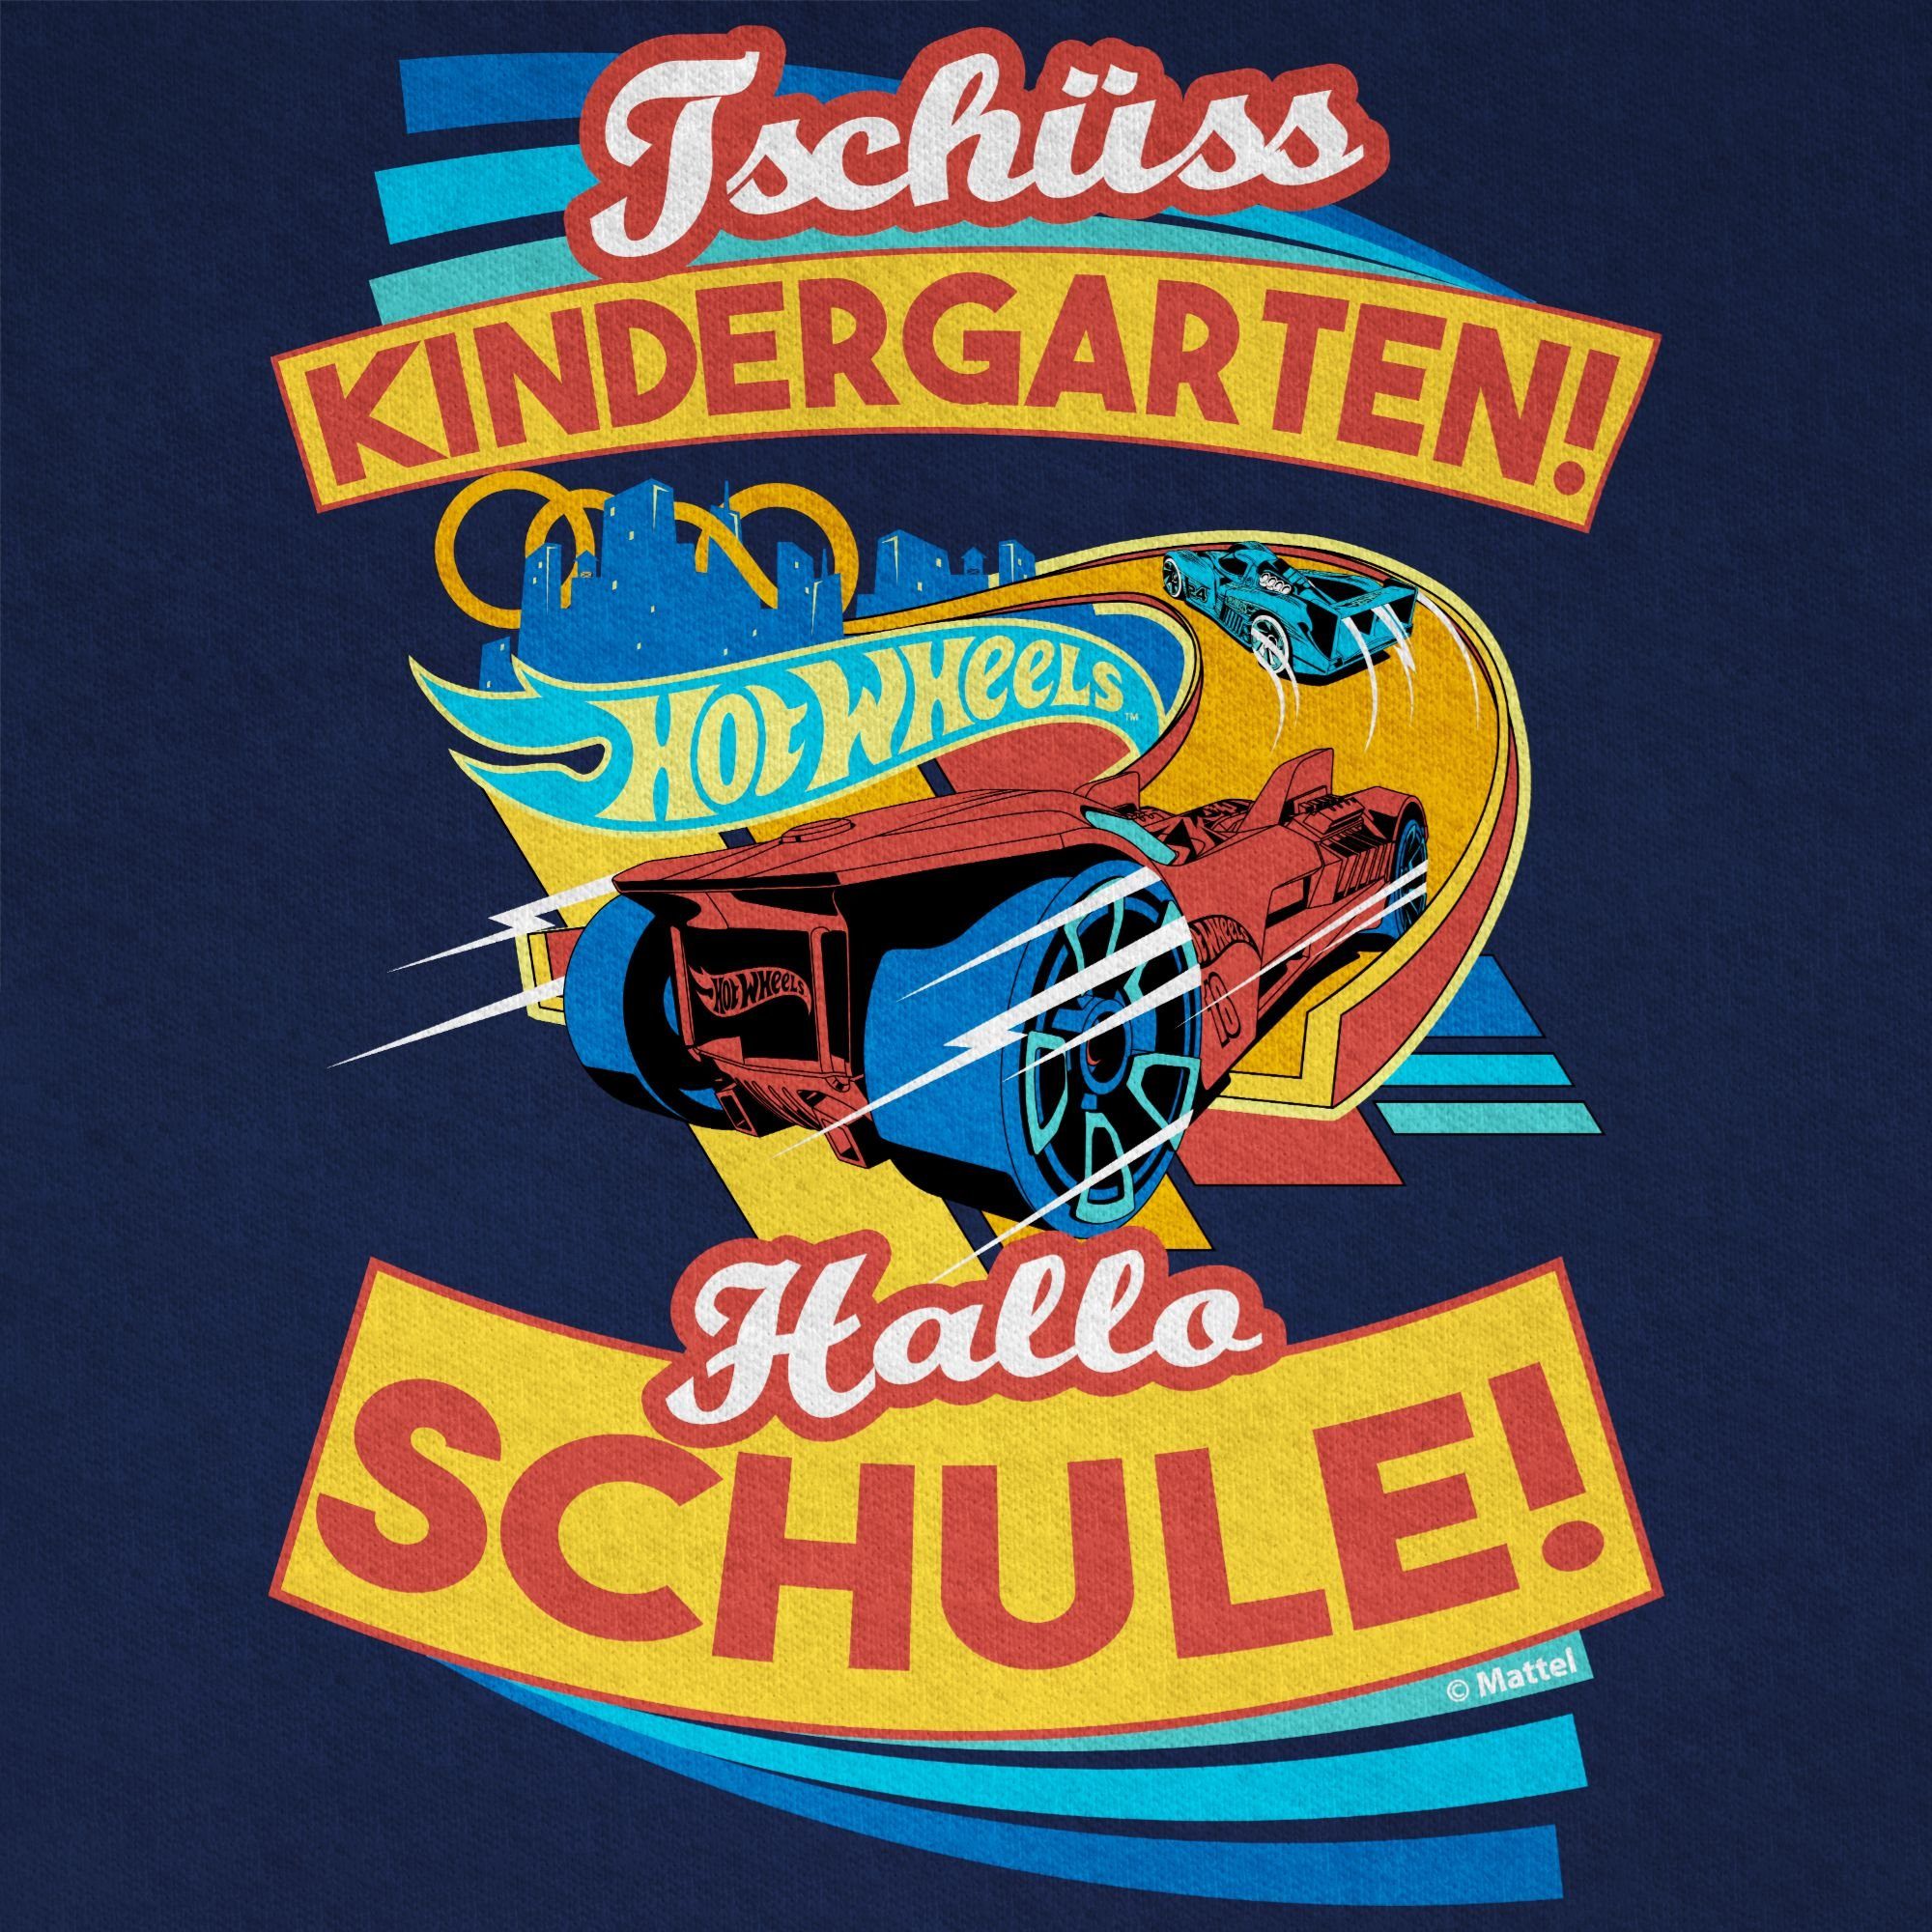 Hallo 02 Tschüss Kindergarten! Dunkelblau Schule! Hot Shirtracer Wheels T-Shirt Jungen